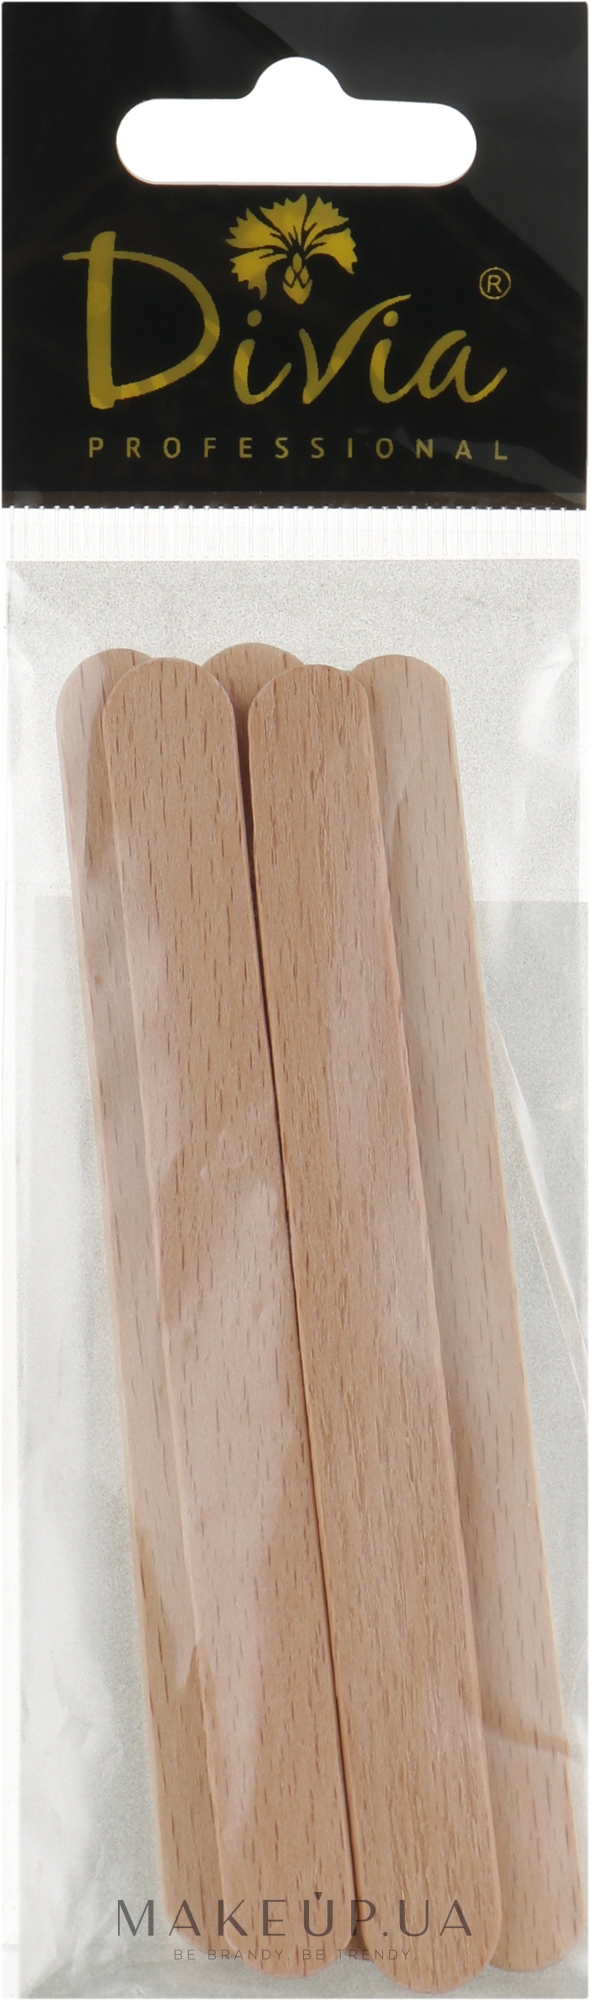 Дерев'яний шпатель для нанесення воску Di587 92х10 мм, 5 шт. - Divia Di587 — фото 5шт